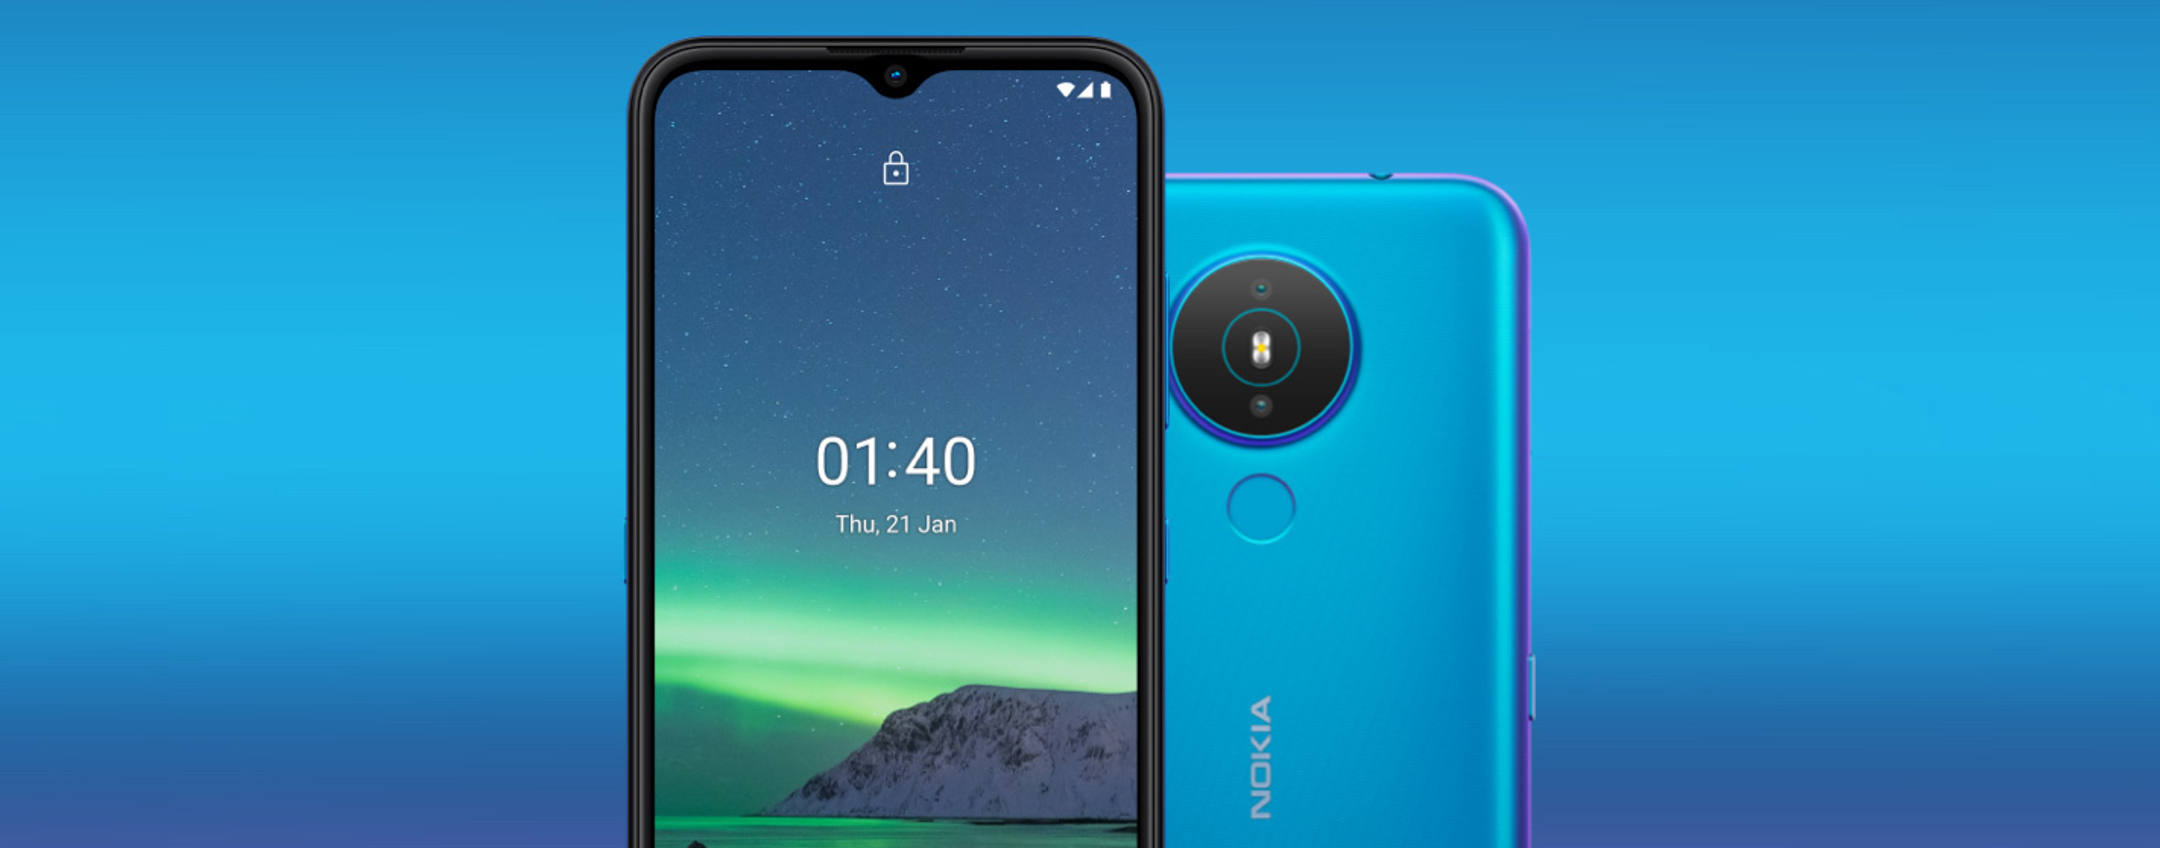 Nokia: niente smartphone top di gamma, HMD Global vuota il sacco